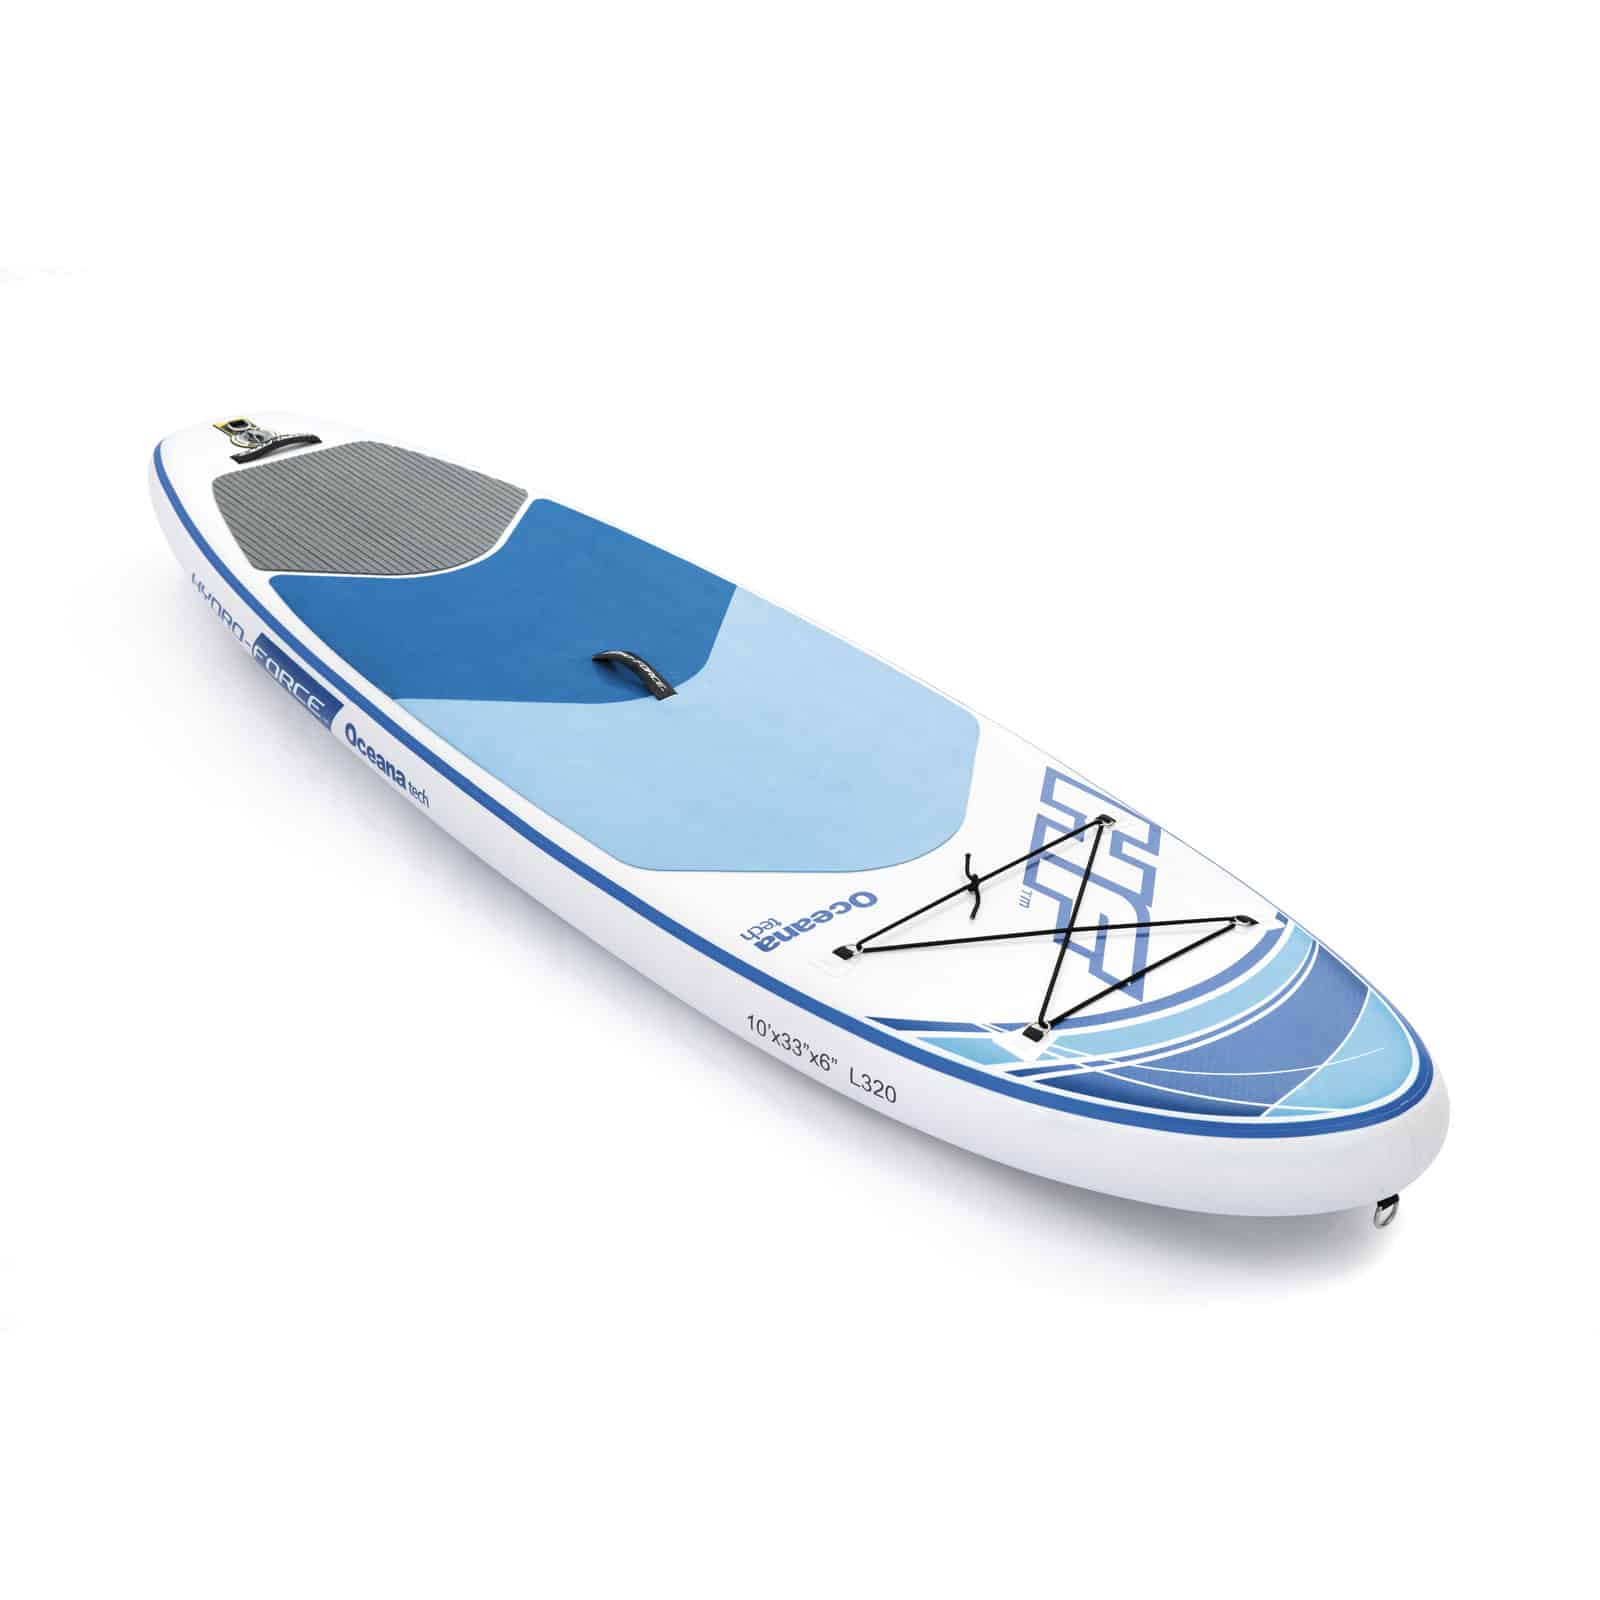 Tabla Paddle Surf Hinchable Bestway Hydro-force Oceana Tech Con Bolsa De Transporte - multicolor - 